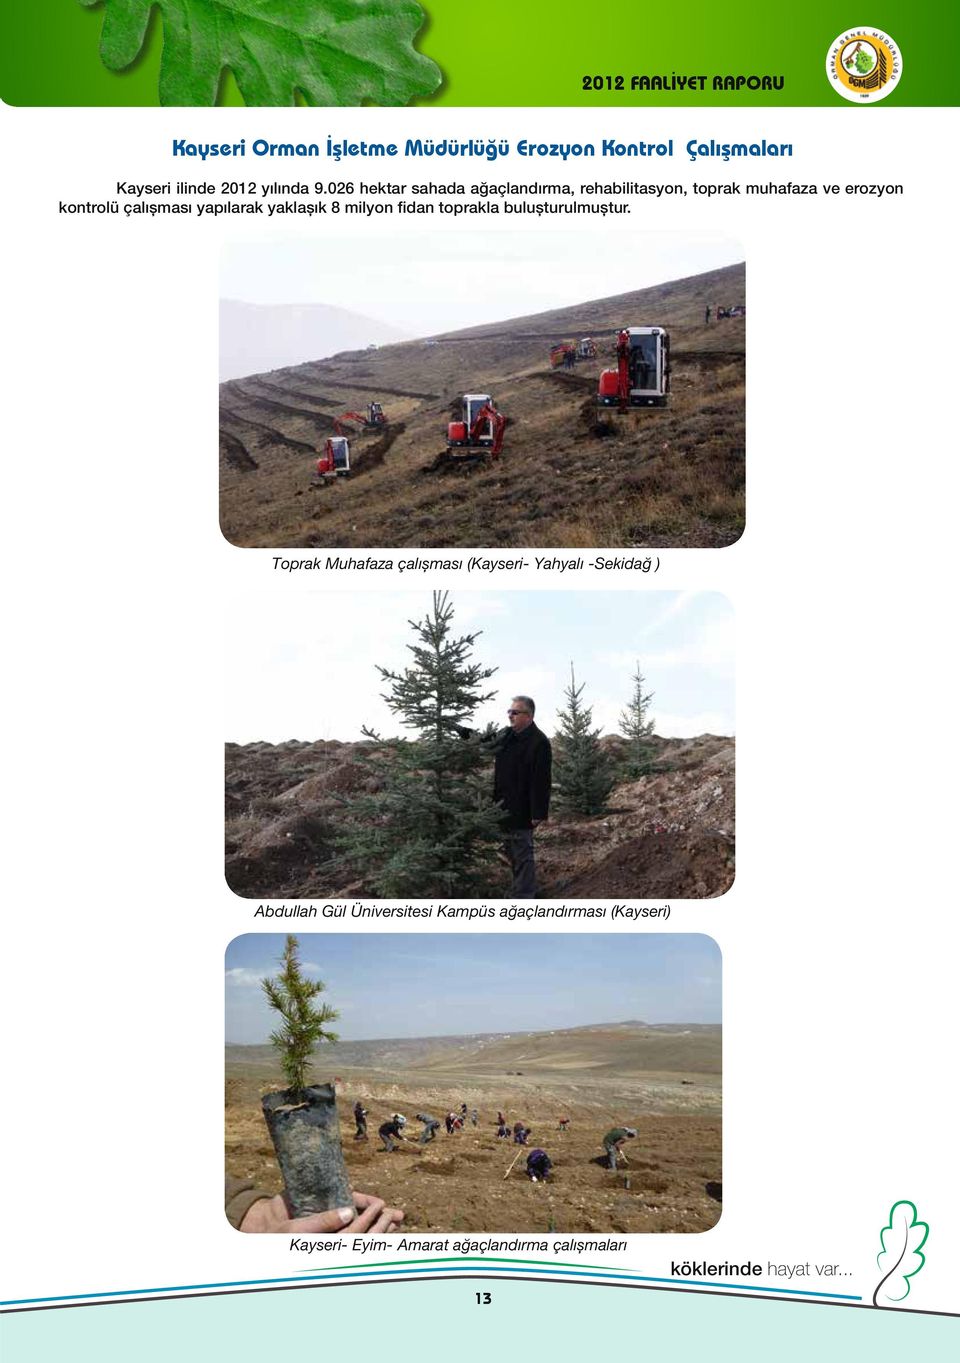 026 hektar sahada ağaçlandırma, rehabilitasyon, toprak muhafaza ve erozyon kontrolü çalışması yapılarak